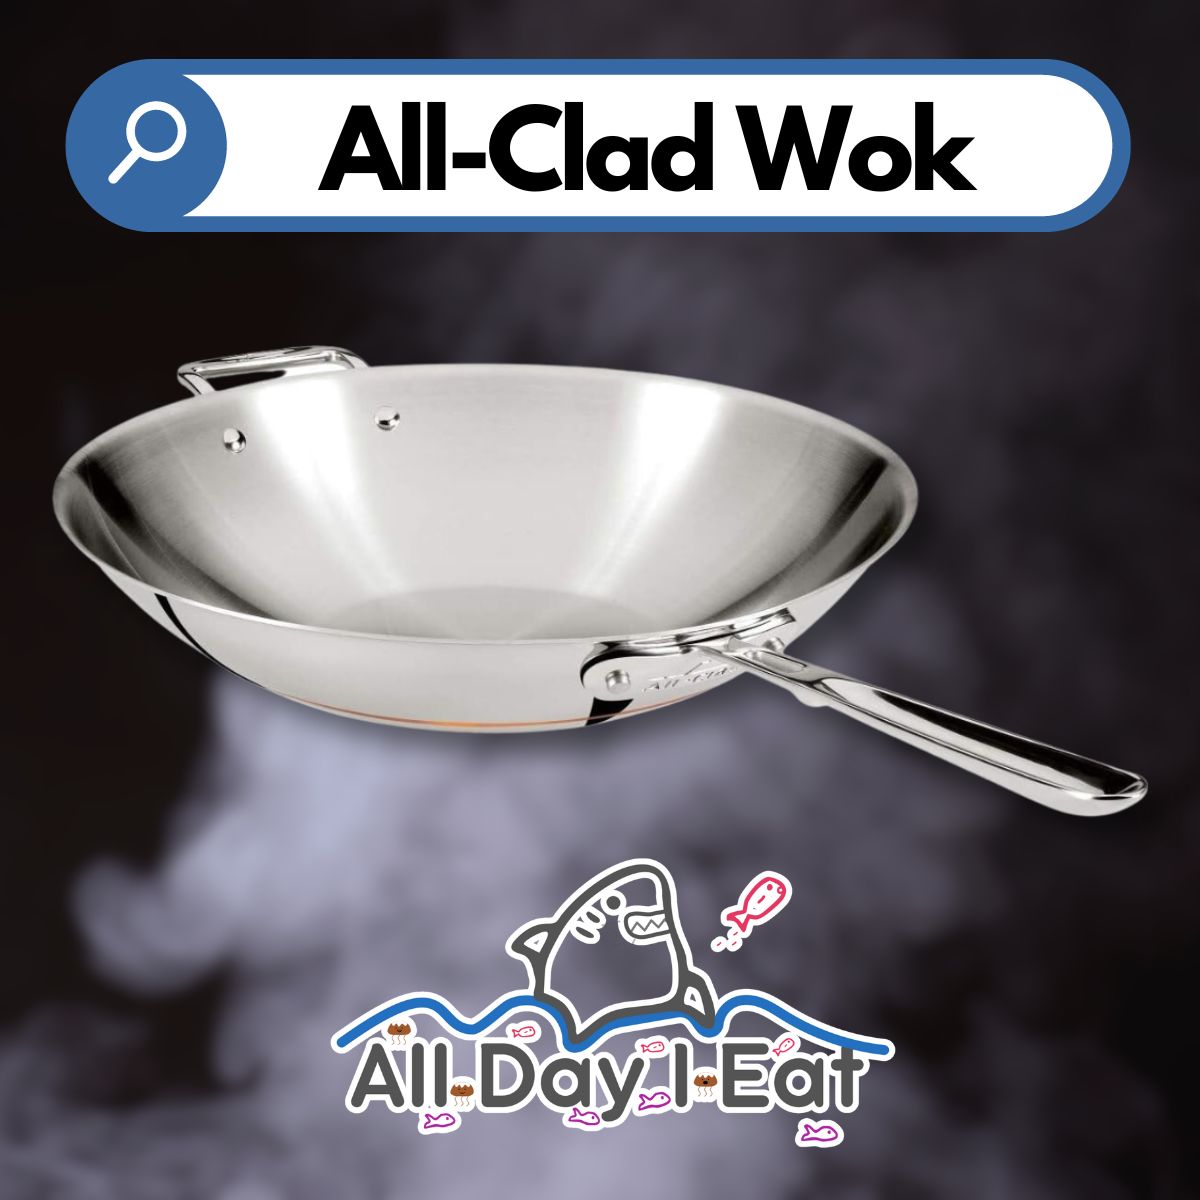 All-clad LTD Wok 10 